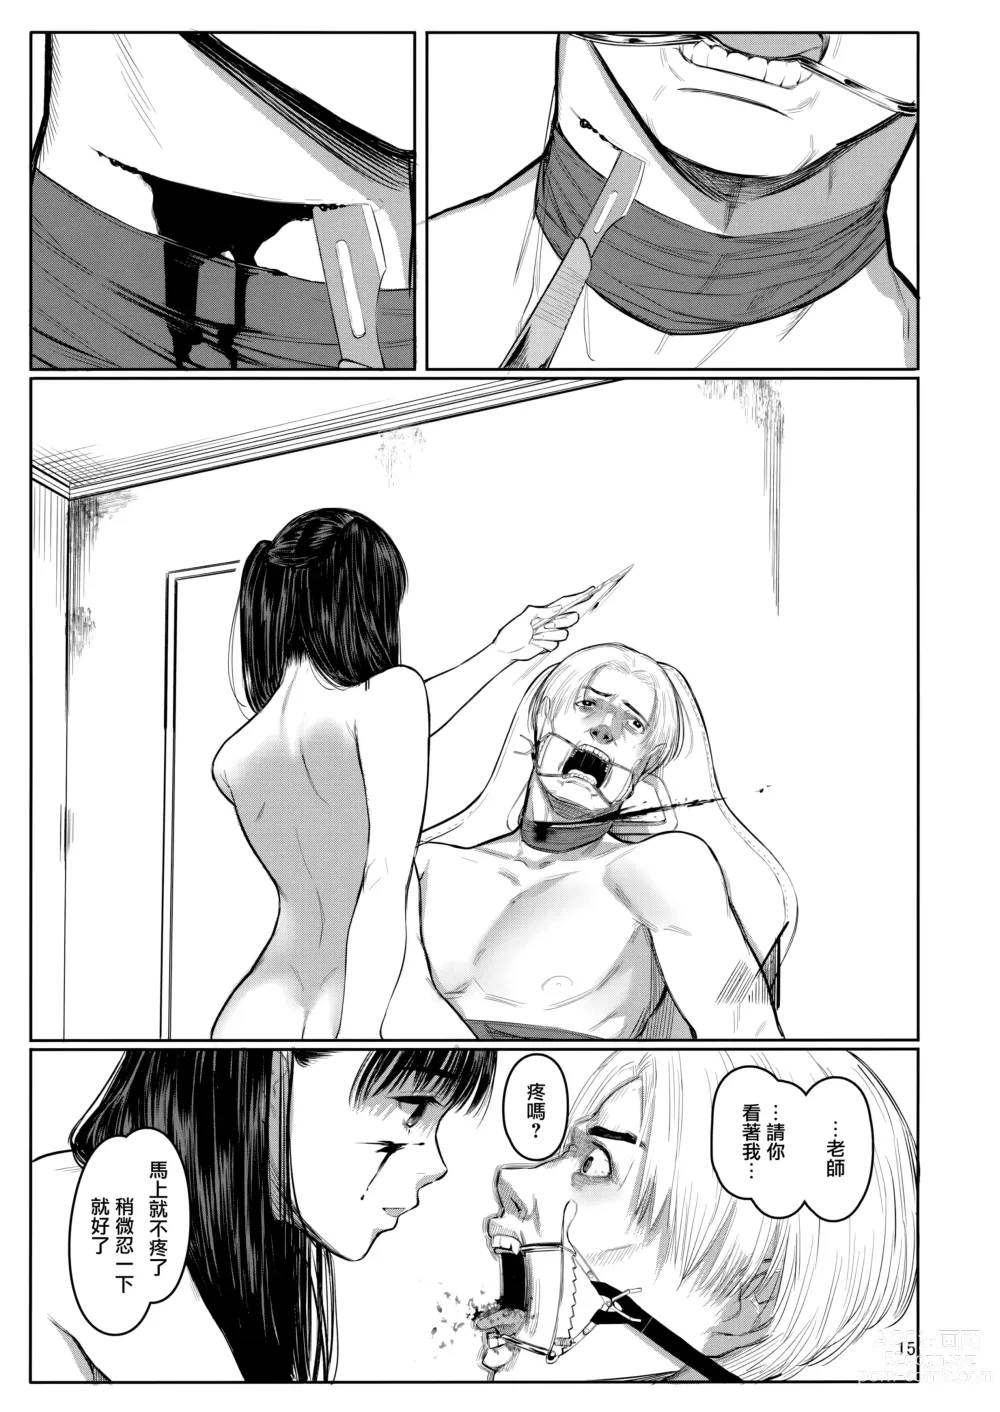 Page 14 of doujinshi Sensei